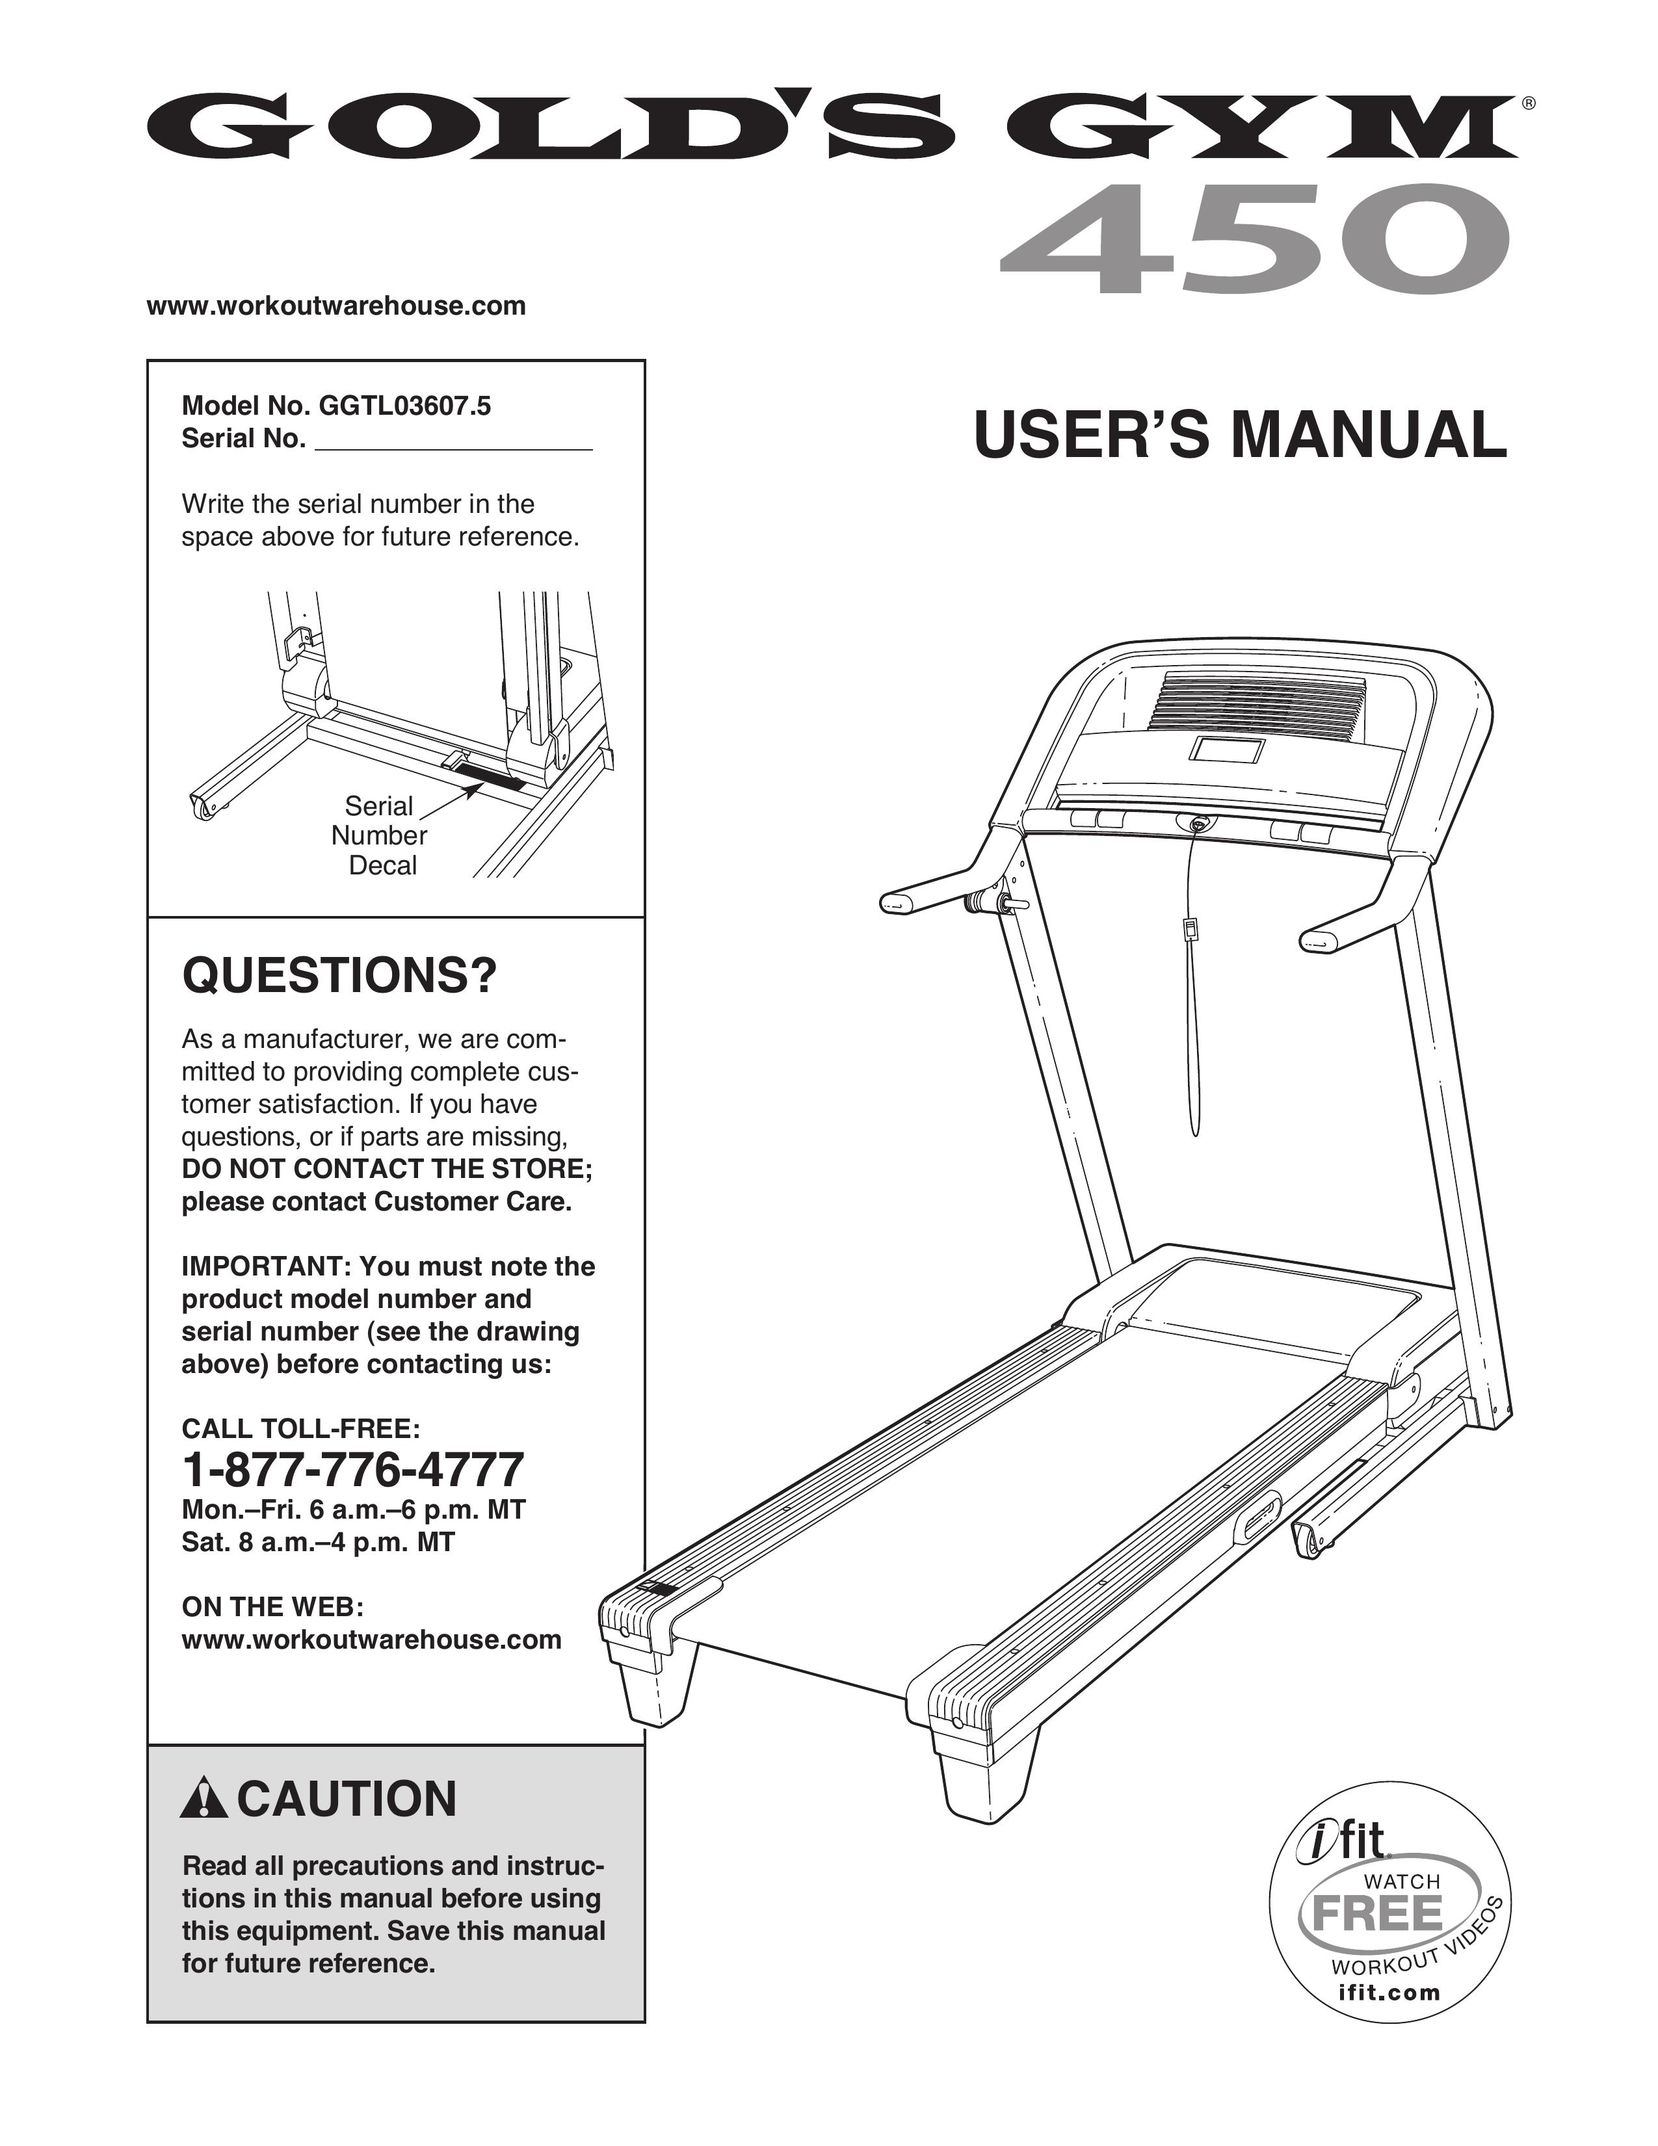 Gold's Gym GGTL03607.5 Treadmill User Manual